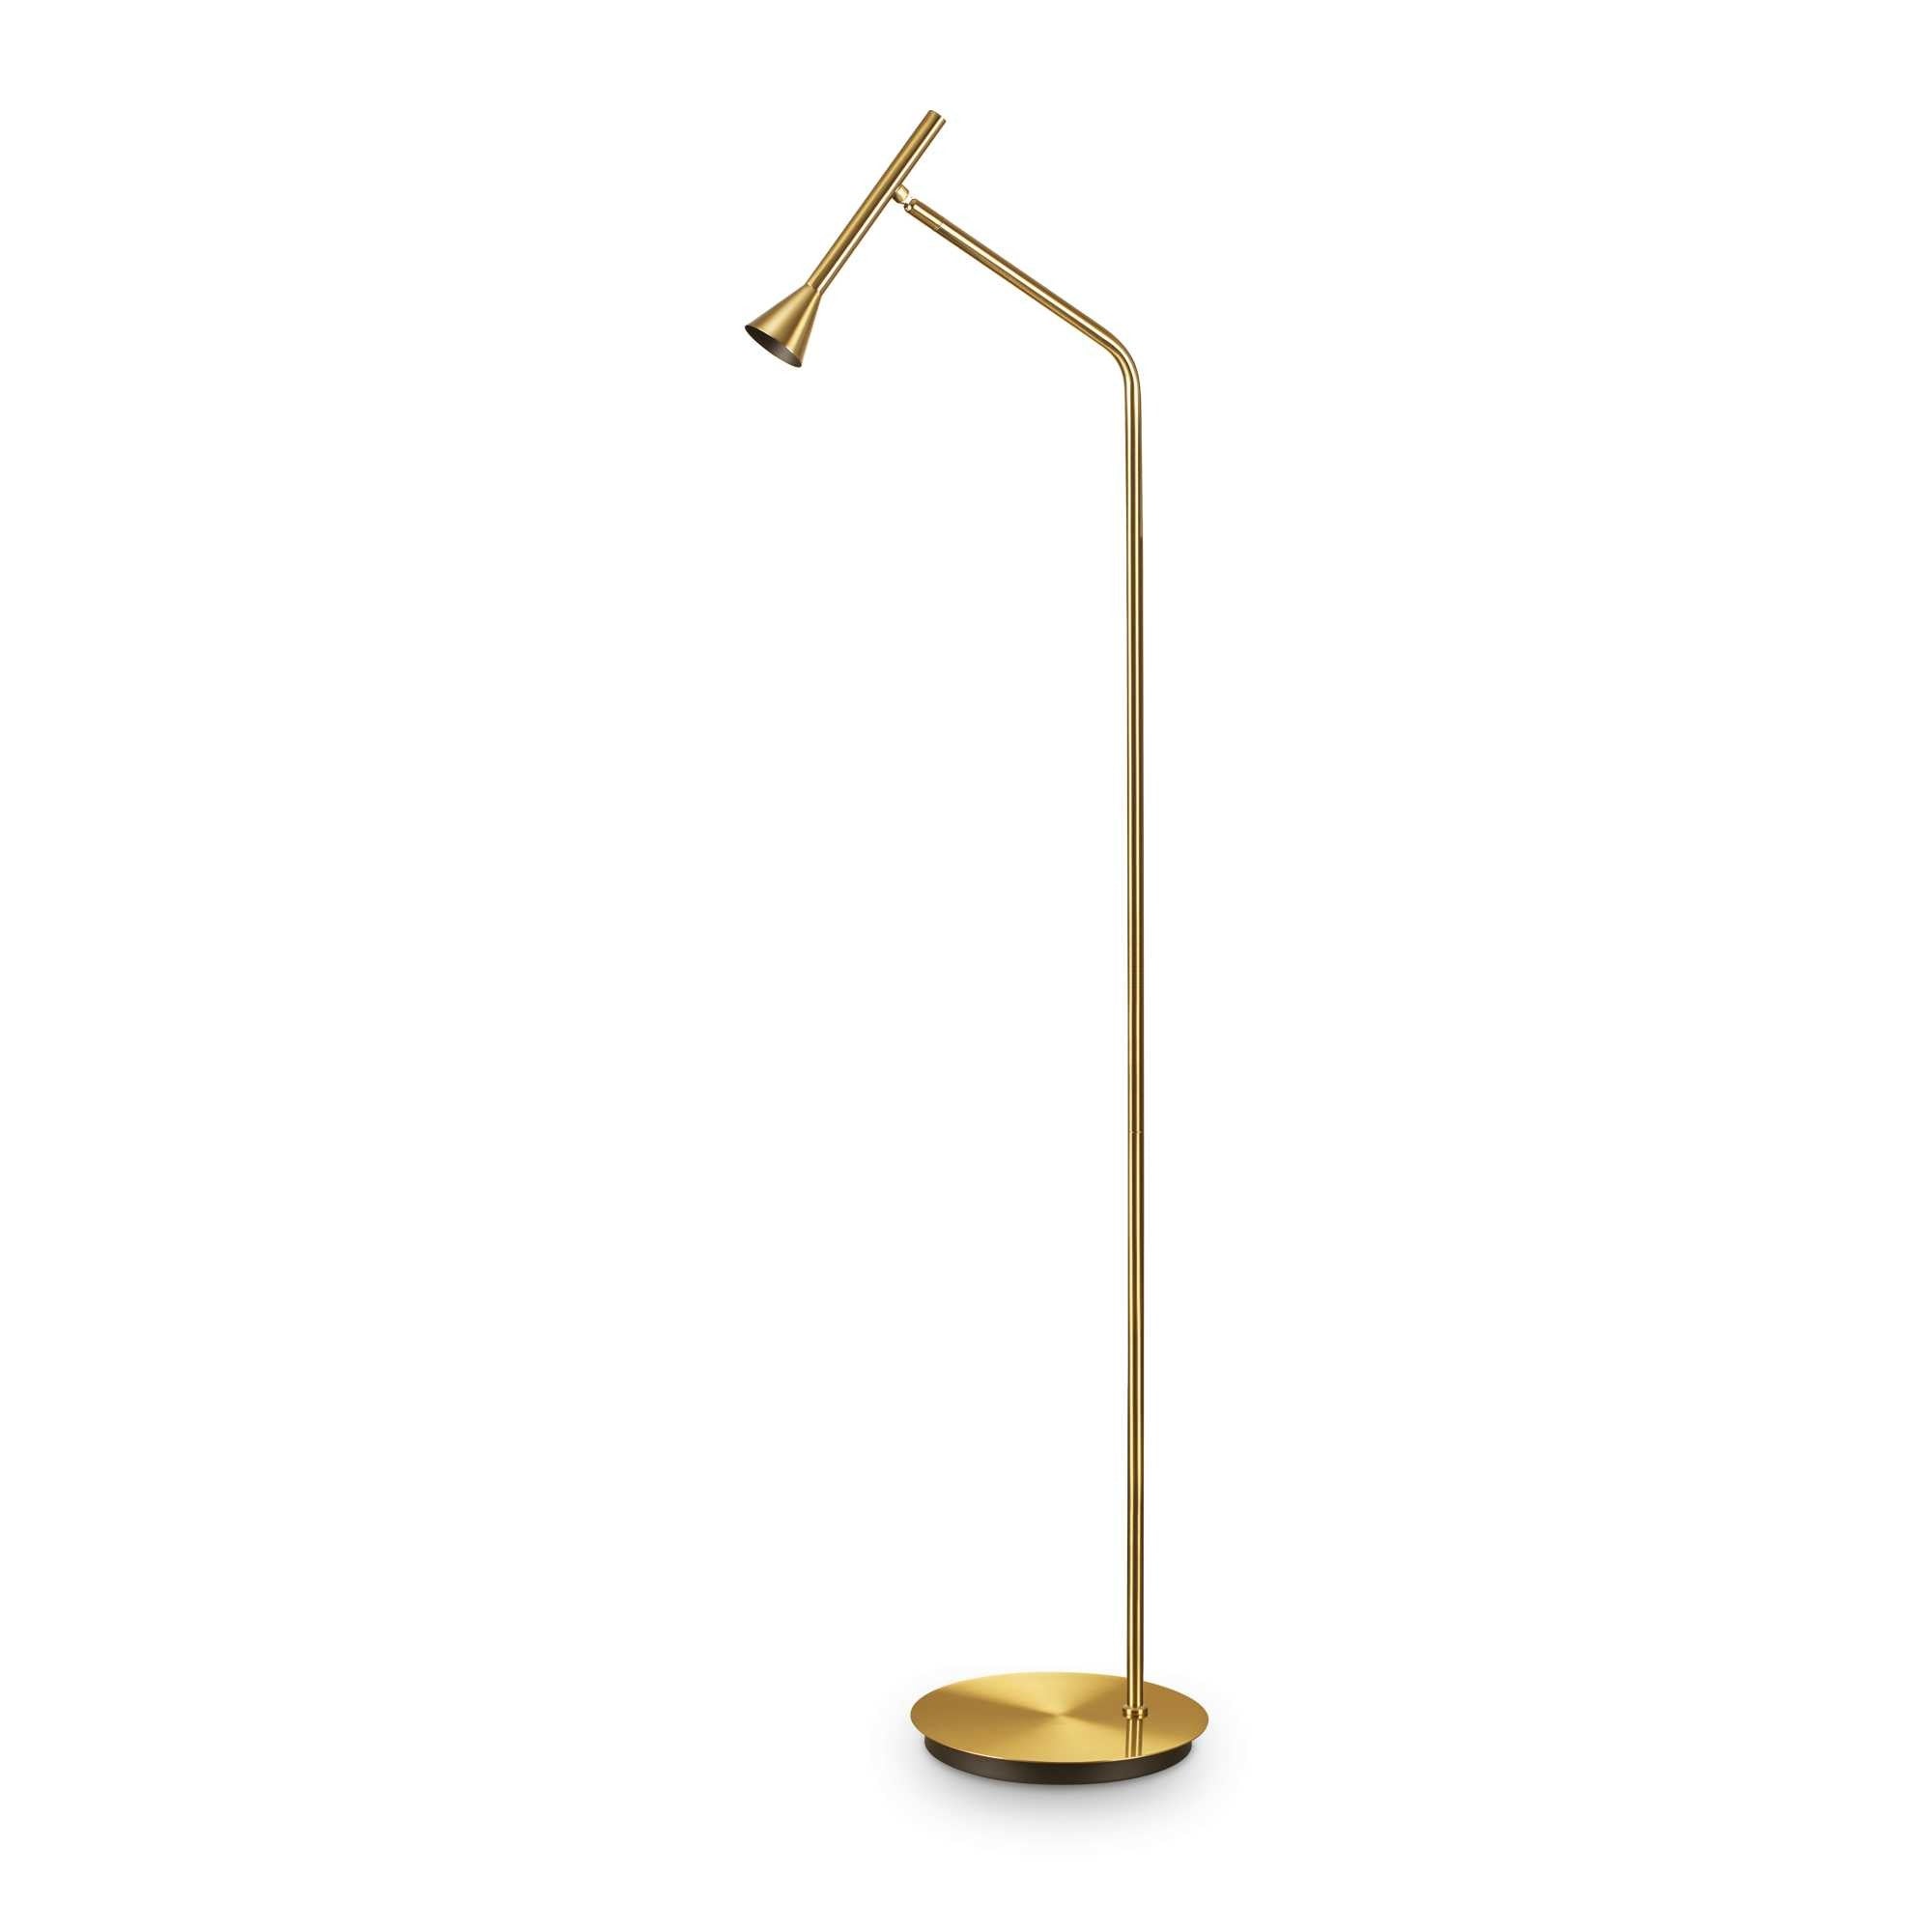 DIESIS - Minimalist design adjustable floor lamp